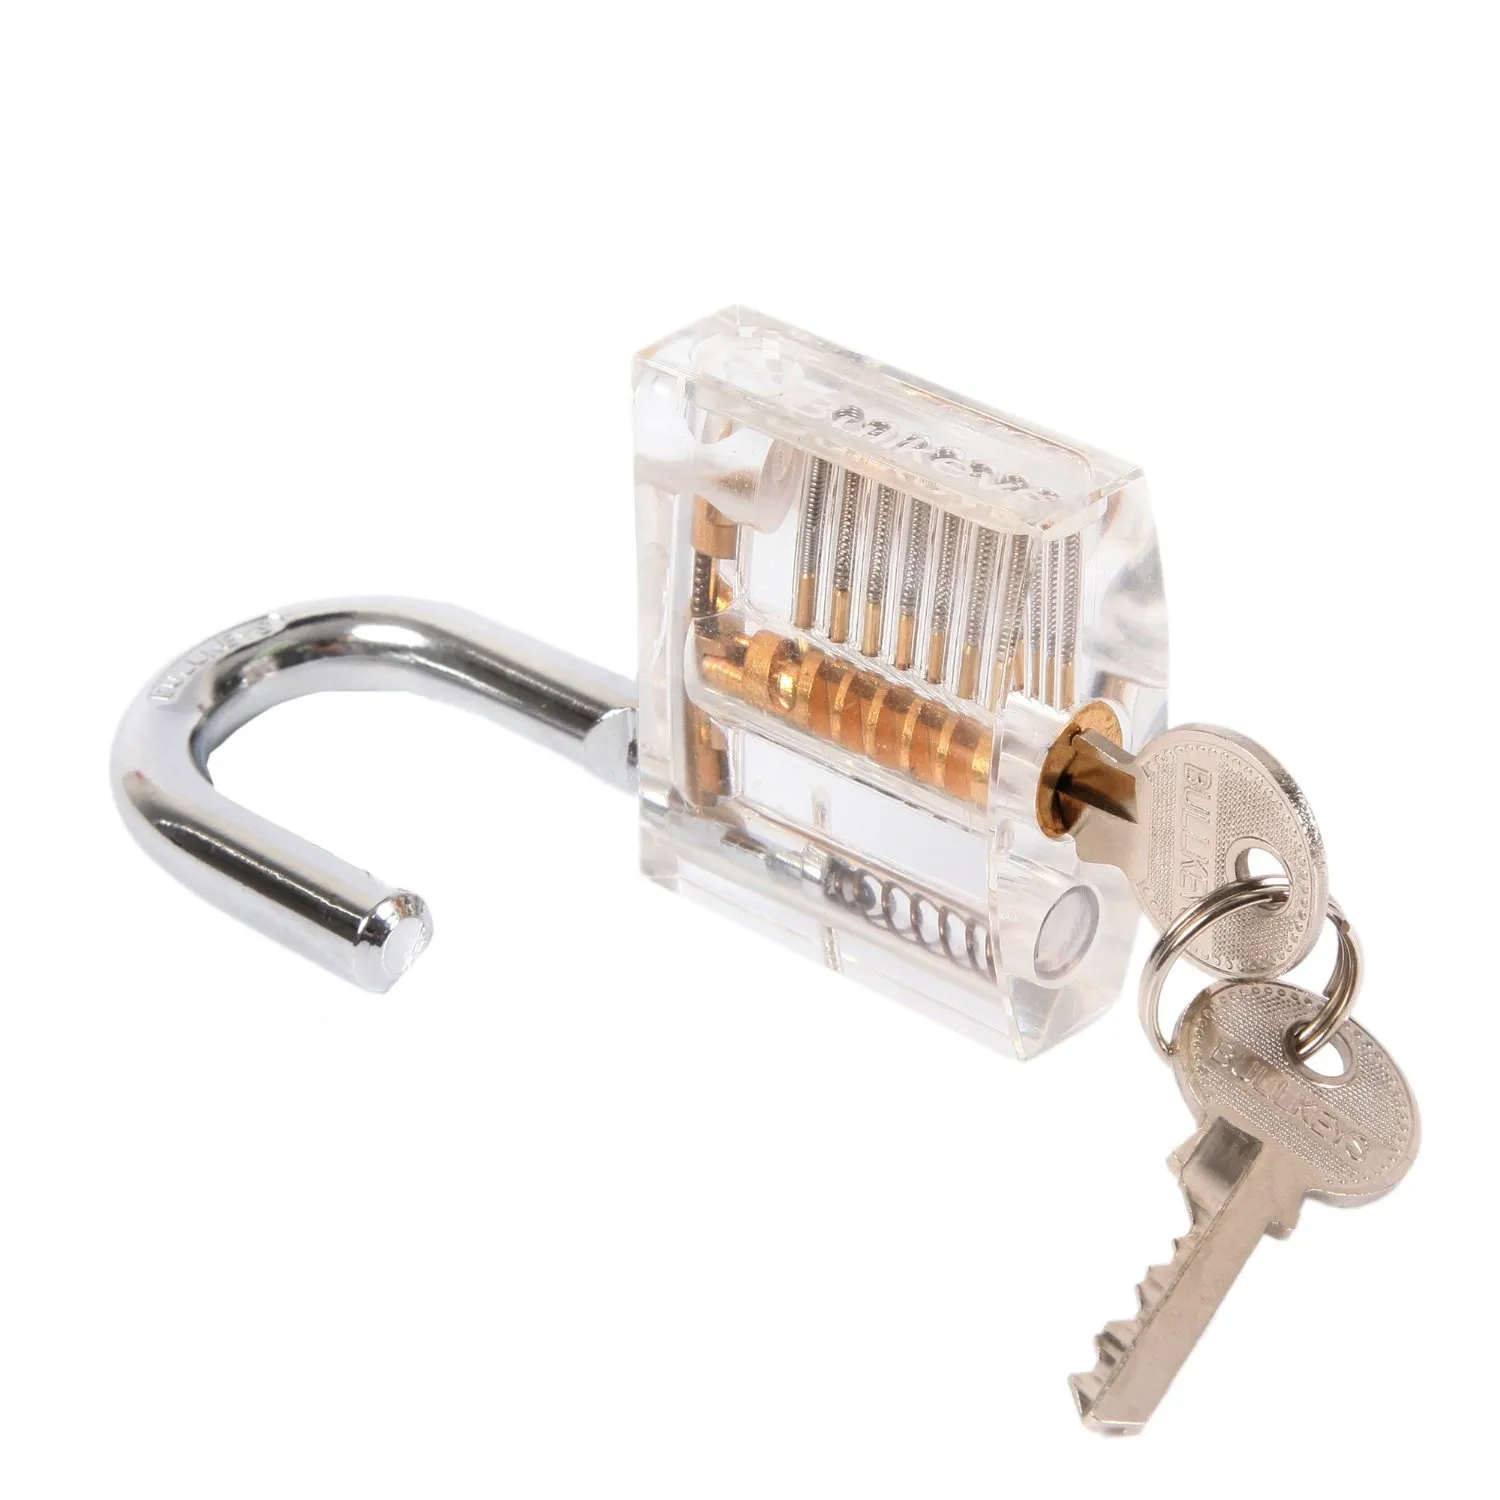 Unlocking Lock Pick Tool Hook Lock Picks Locksmith Tools + Lock Picking Tools Sets with Transparent Practice Locks8267403